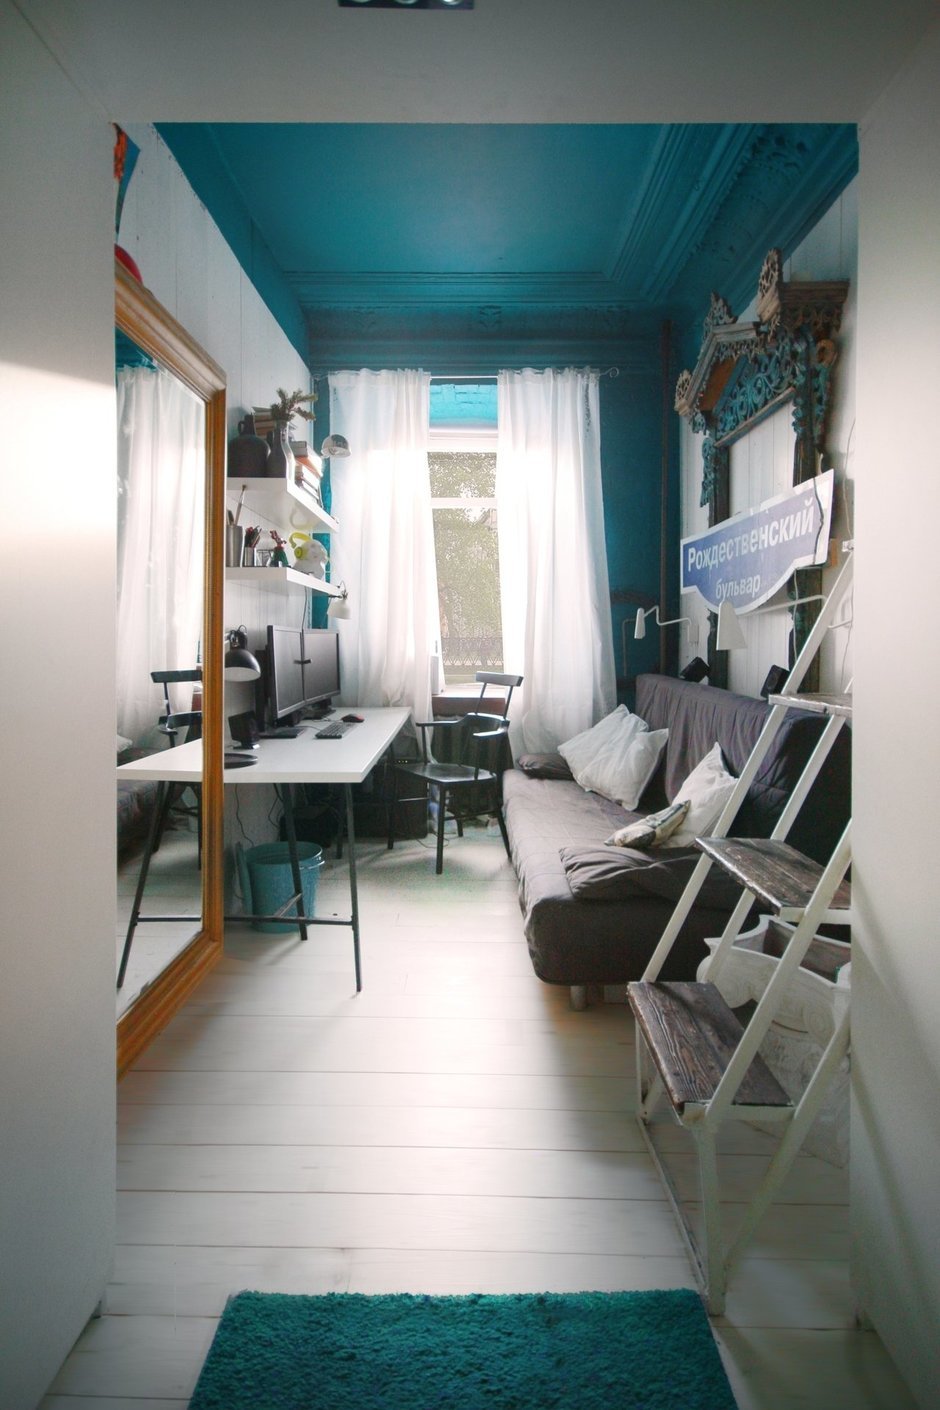 Фотография: Офис в стиле Современный, Малогабаритная квартира, Квартира, Цвет в интерьере, Дома и квартиры, Белый, Бирюзовый – фото на InMyRoom.ru